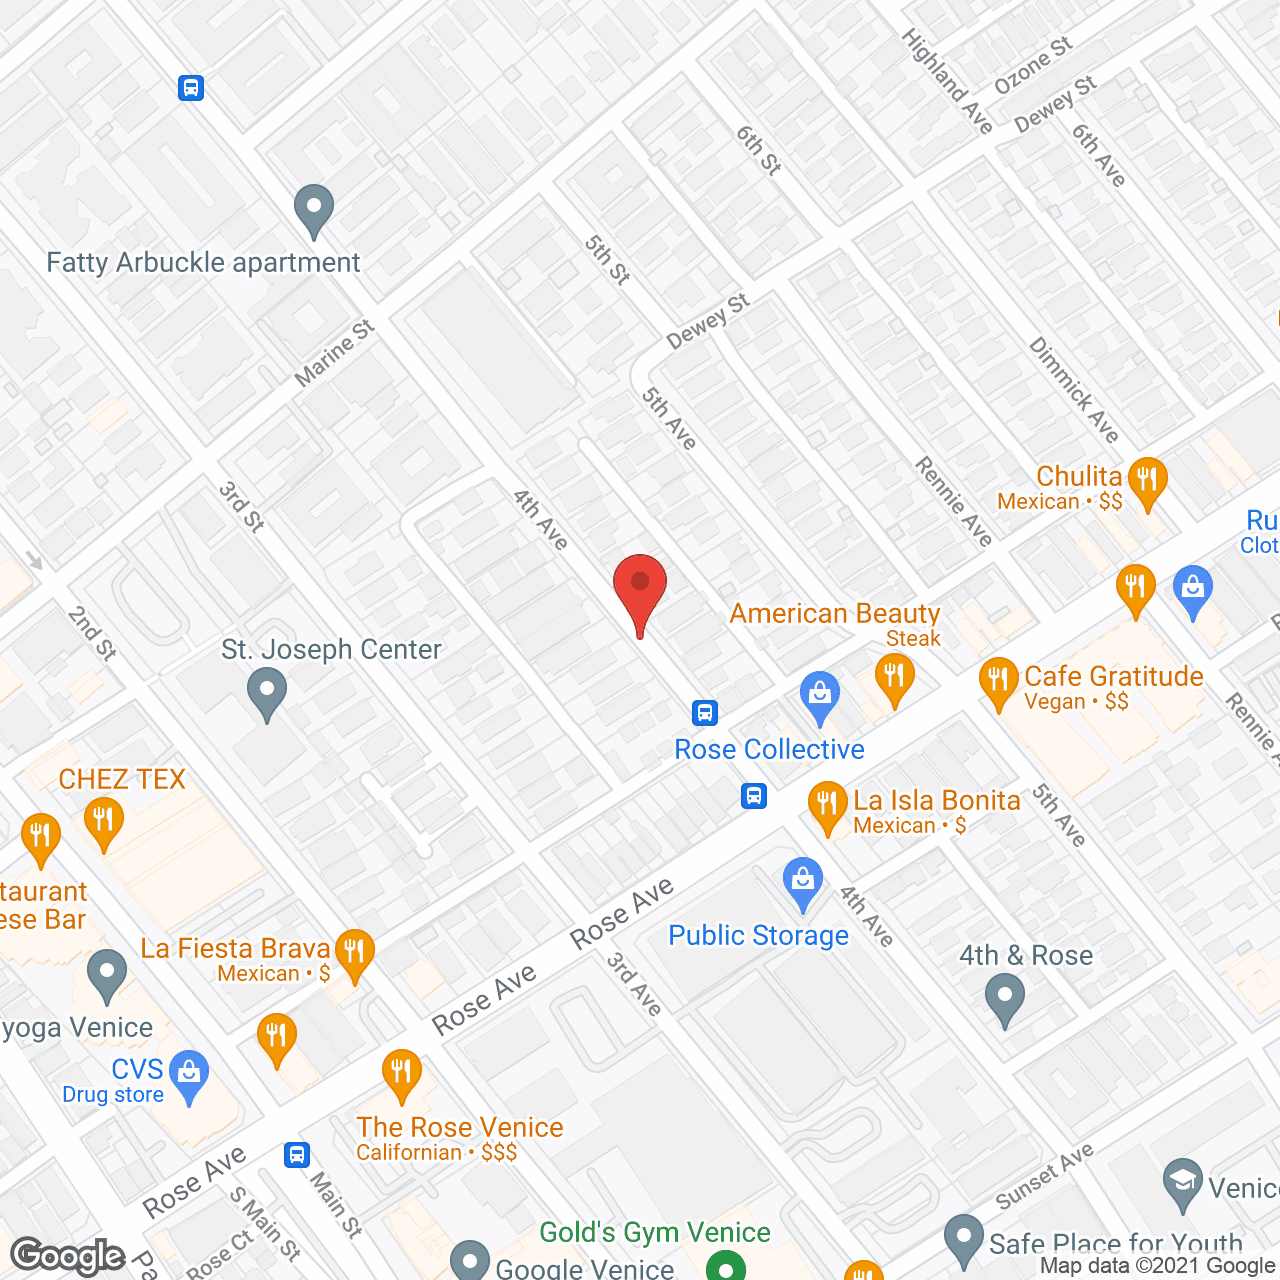 Bravo Family Home in google map